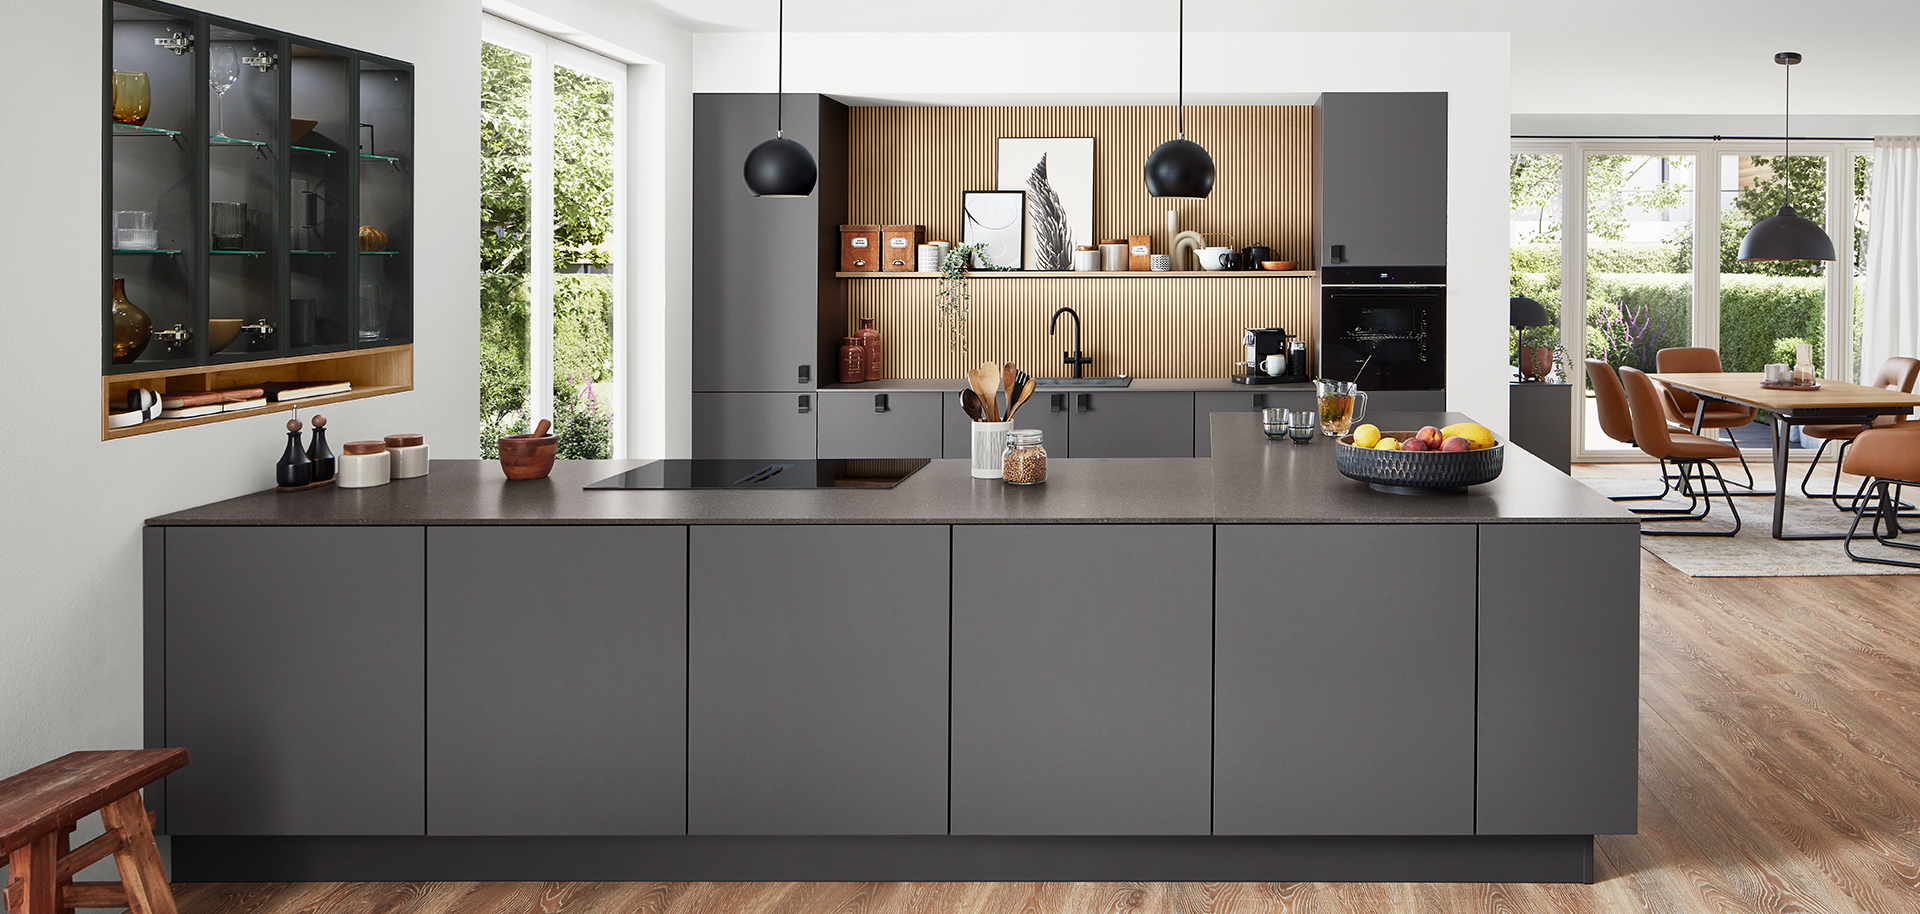 Cocina moderna con elegantes gabinetes negros, electrodomésticos integrados y una isla central, que se integra perfectamente con un luminoso y espacioso comedor.